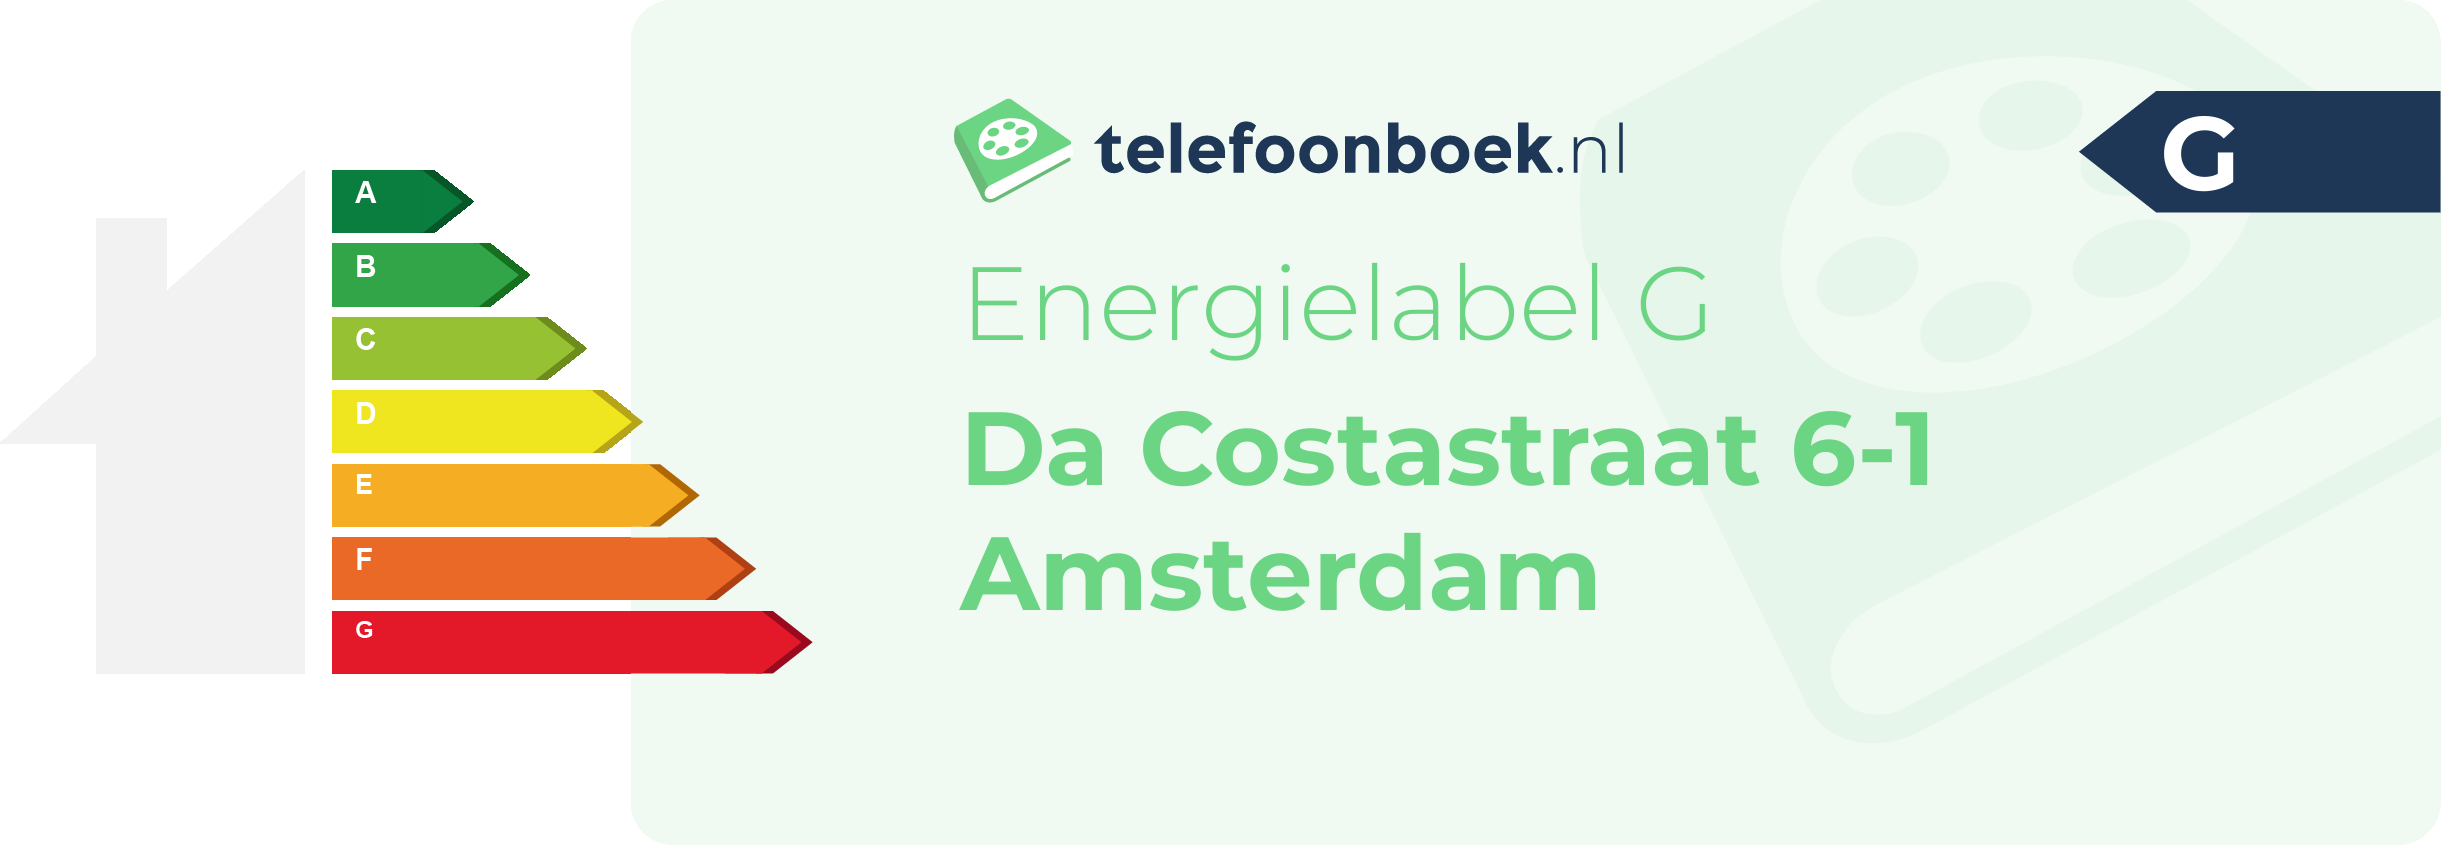 Energielabel Da Costastraat 6-1 Amsterdam